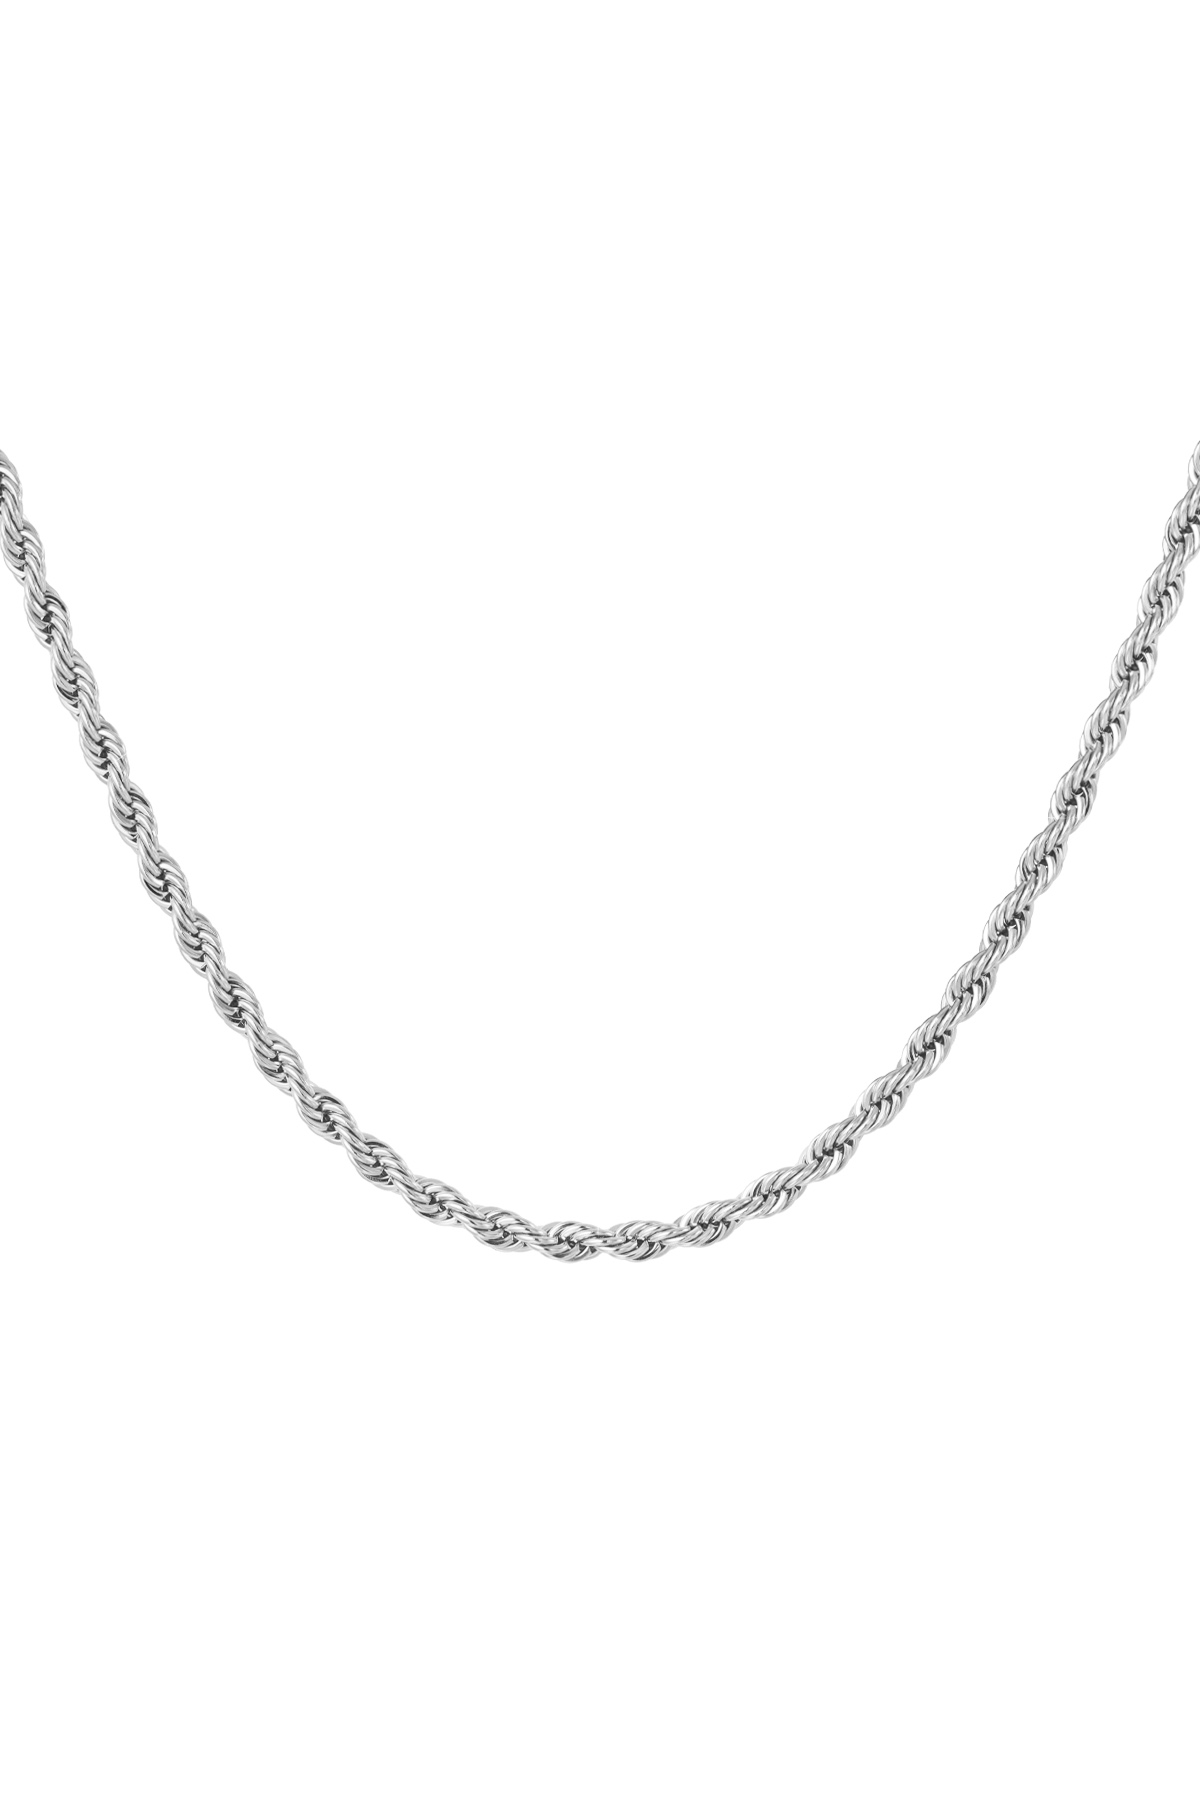 Collar unisex retorcido 50cm - plata-4.0MM h5 